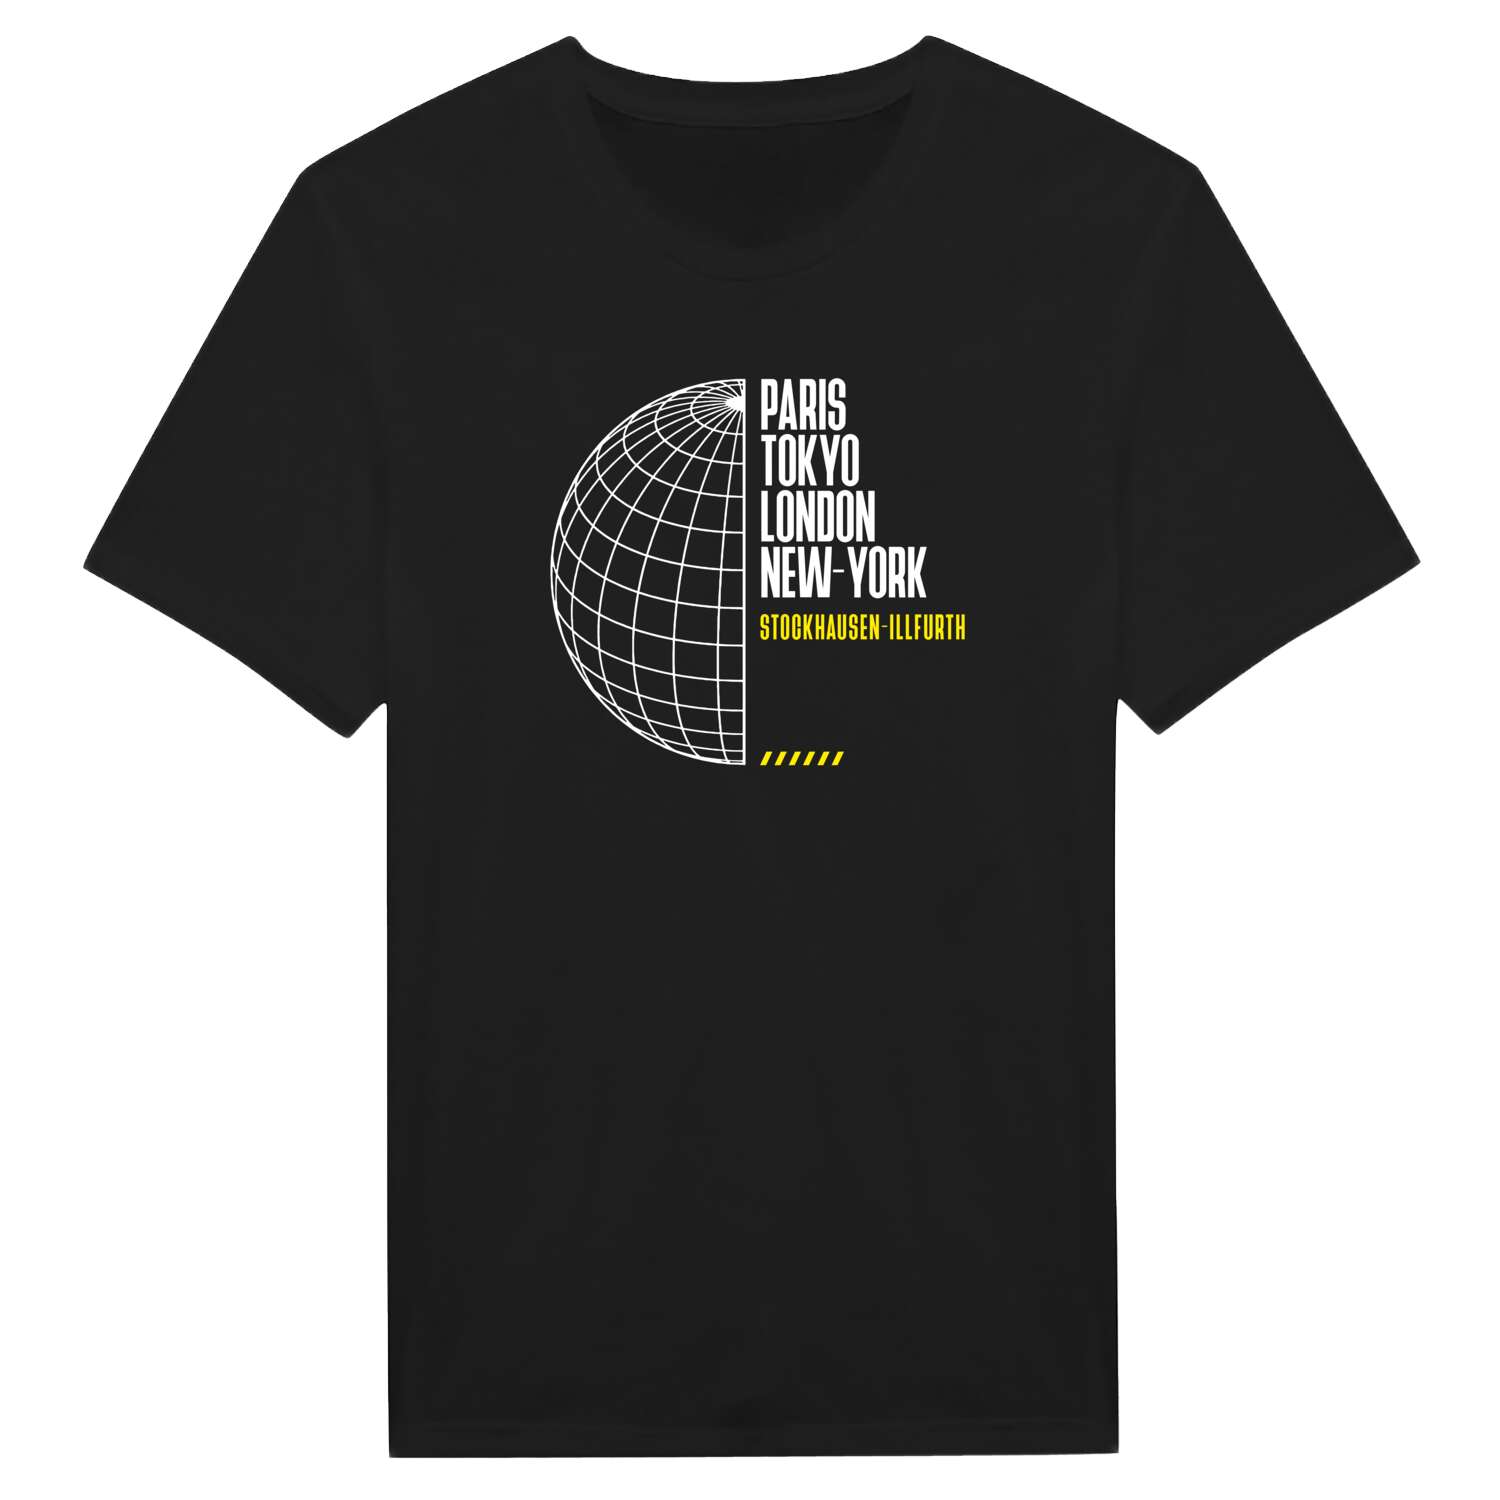 Stockhausen-Illfurth T-Shirt »Paris Tokyo London«